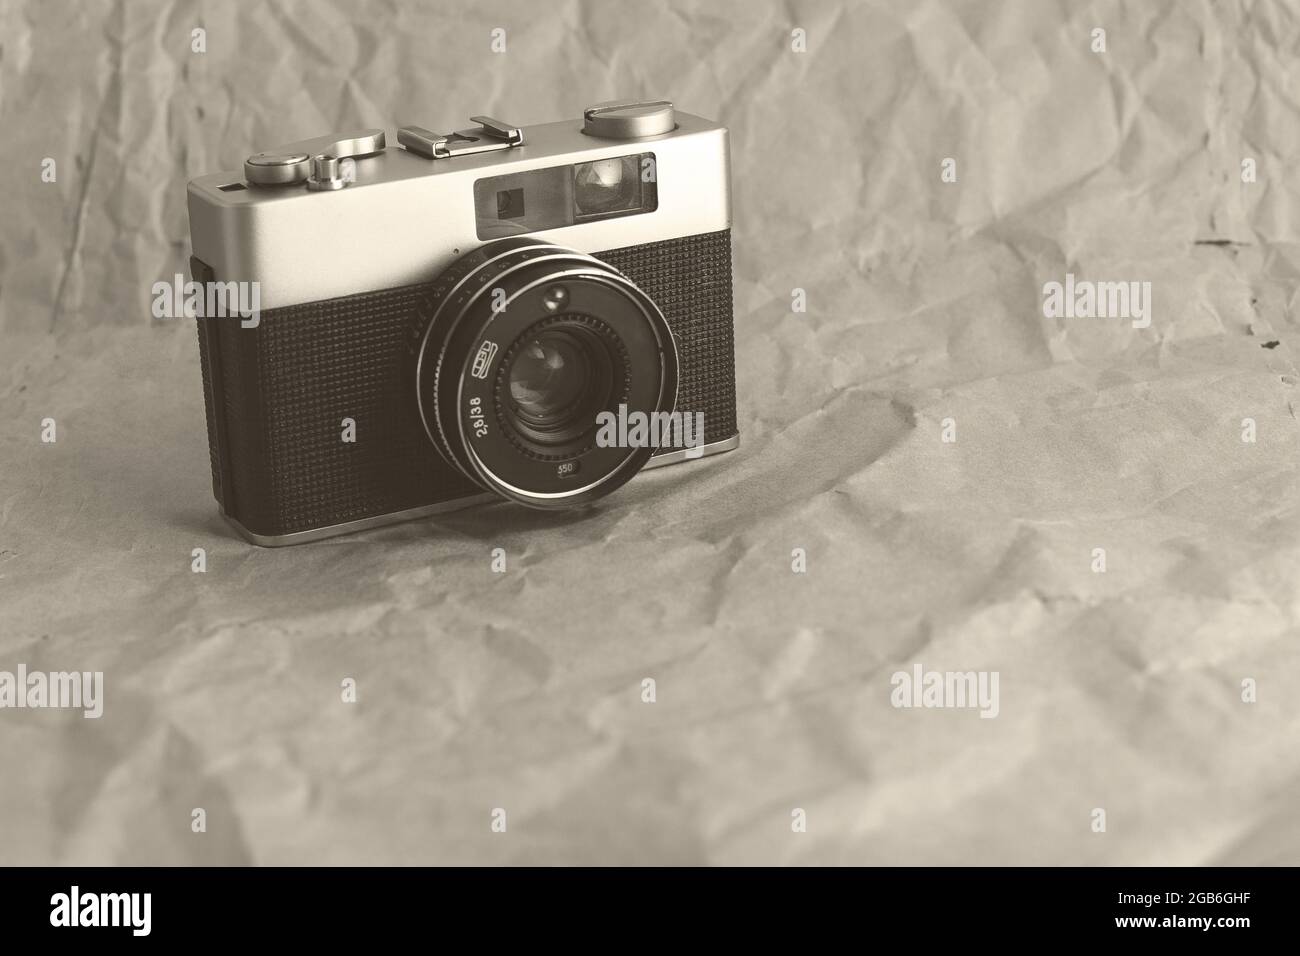  1 cámara retro con cuerda de cuero, accesorios de decoración  color blanco : Electrónica